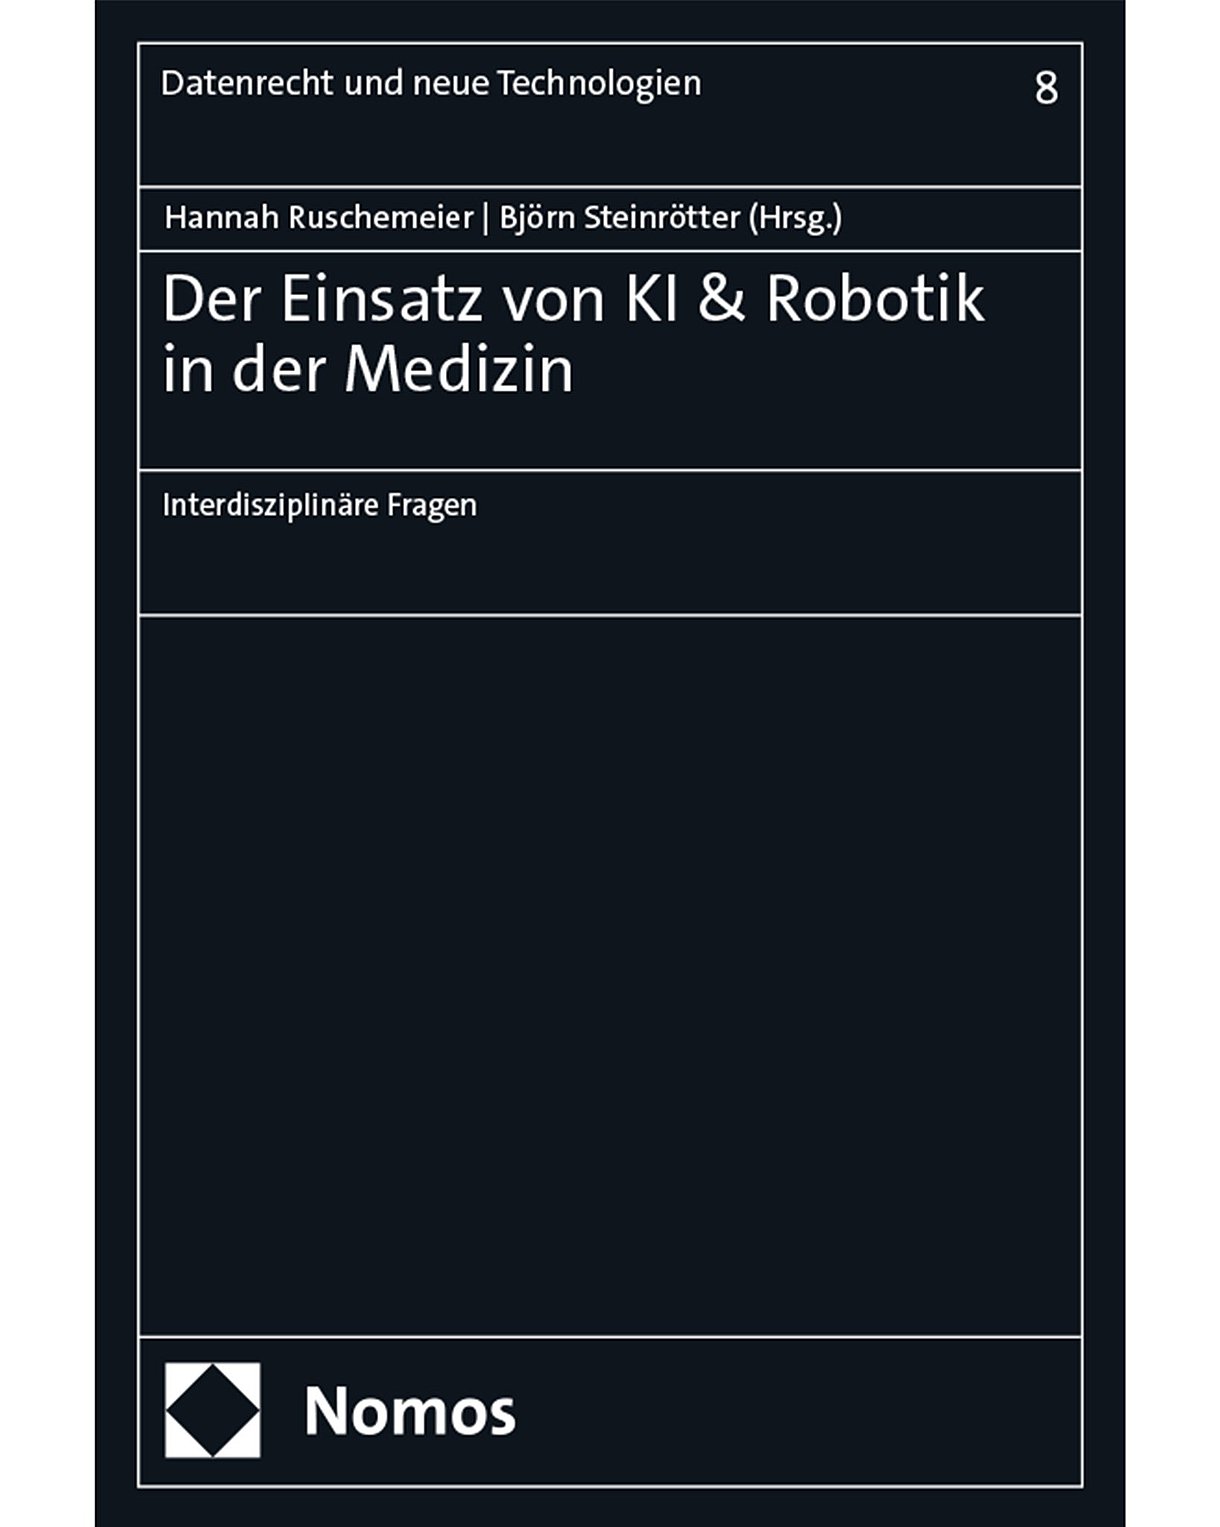 Foto: Buchtitel: Hannah Ruschemeier, Björn Steinrötter (Hrsg.): Der Einsatz von KI & Robotik in der Medizin.